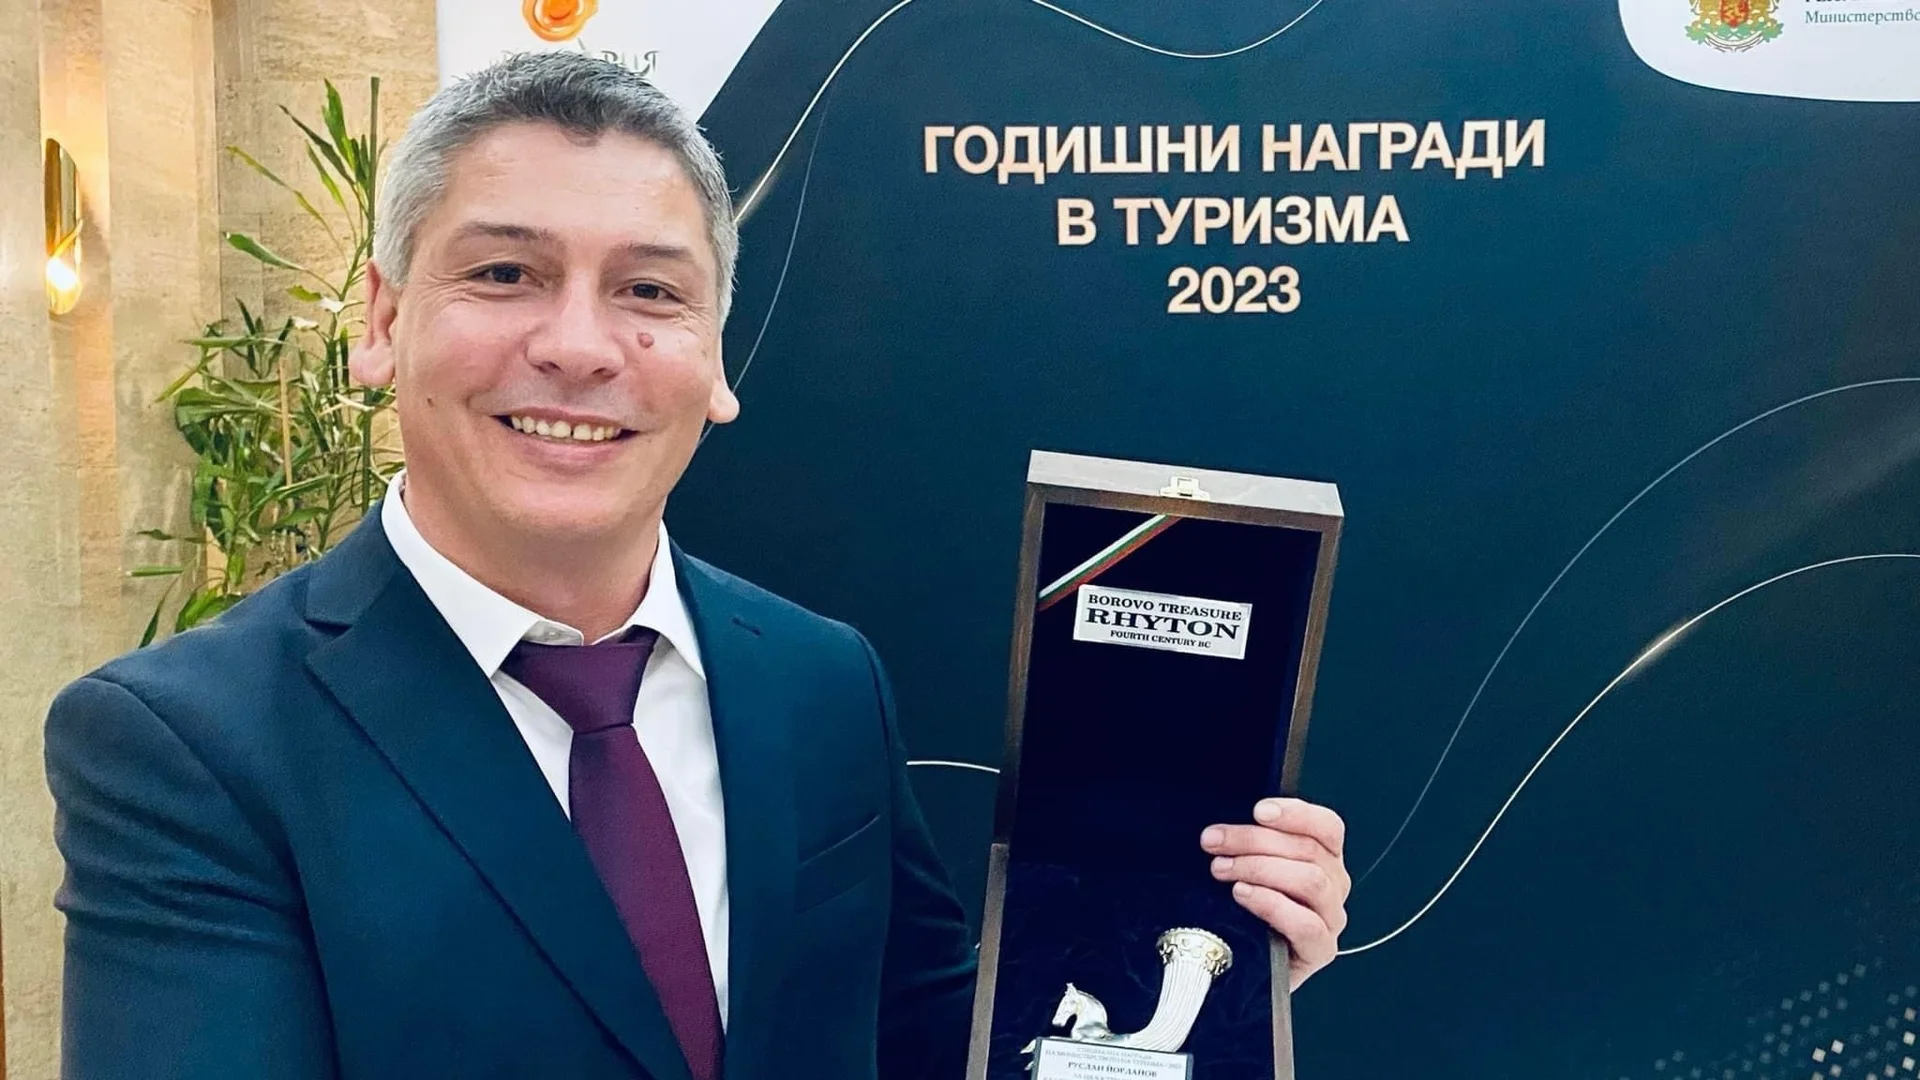 Издателят на Bgtourism.bg Руслан Йорданов с награда за цялостен принос от Министерство на туризма (СНИМКИ)